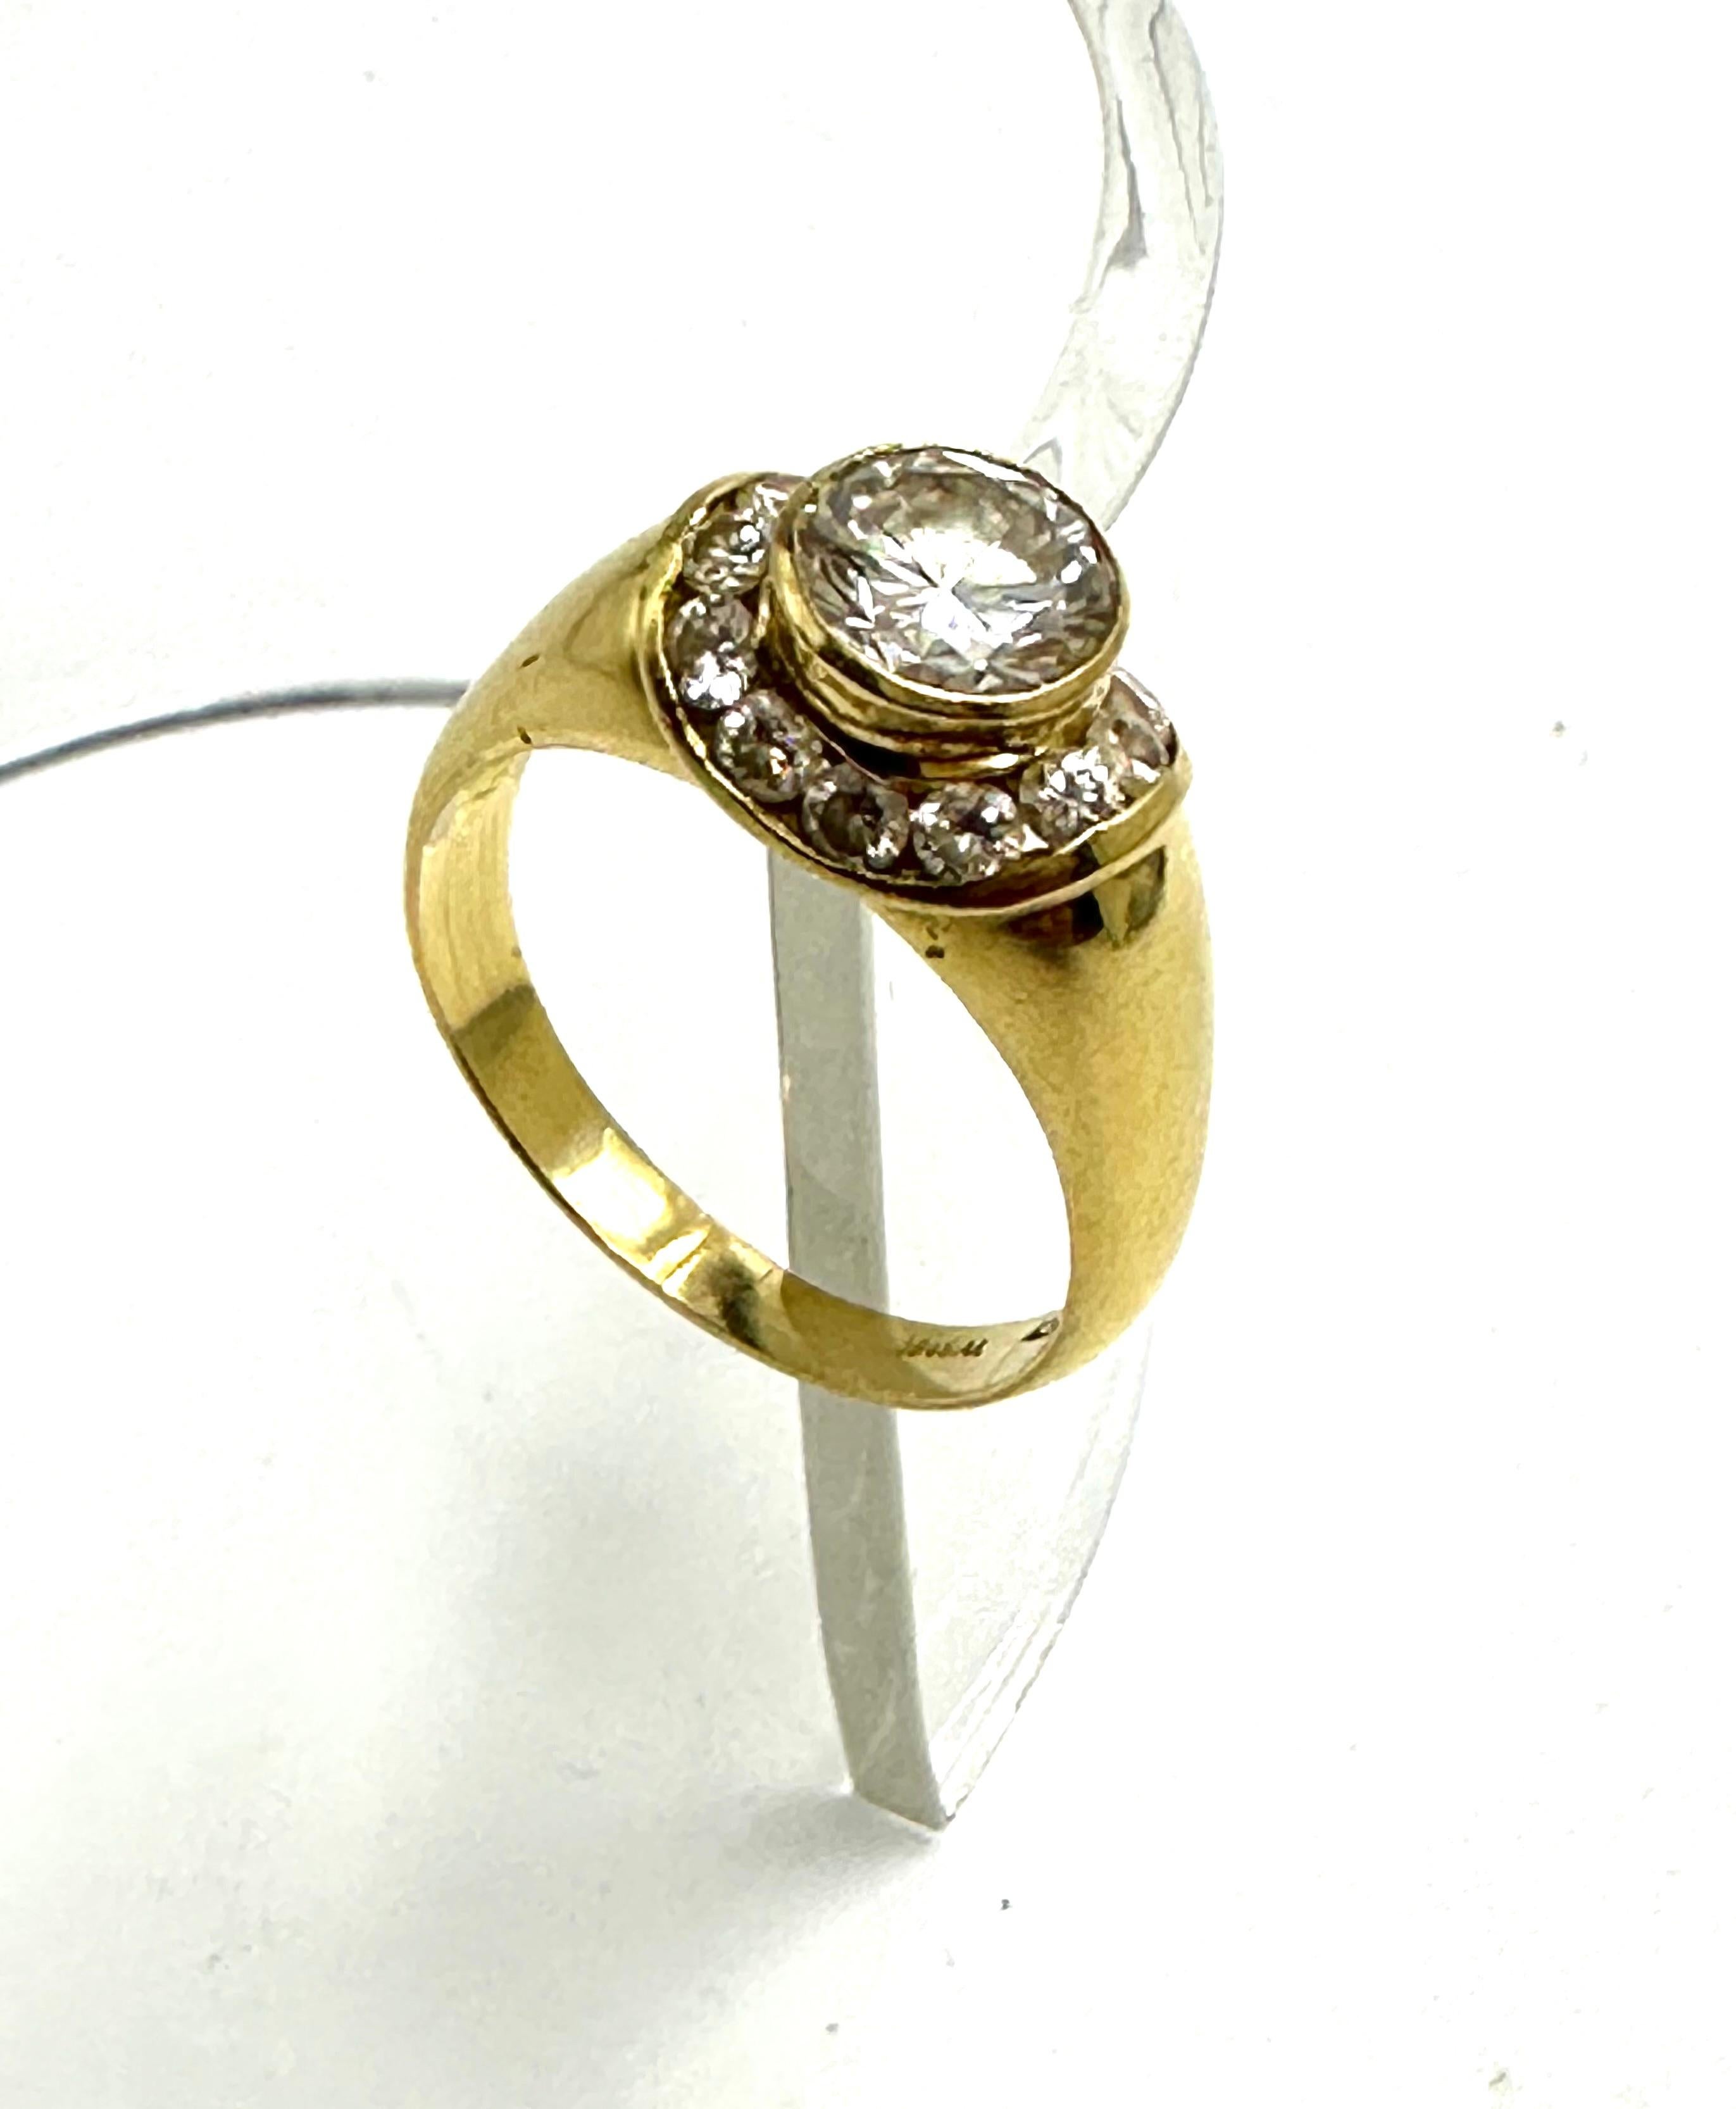 Exklusiver Ring, hergestellt in Italien aus 18 Karat Gelbgold.
Er trägt einen natürlichen Diamanten im Brillantschliff (1,25 ct. J VVS), der von weiteren natürlichen Diamanten (je 0,06 ct.) mit ähnlichen Farbmerkmalen umgeben ist.
Elegant und